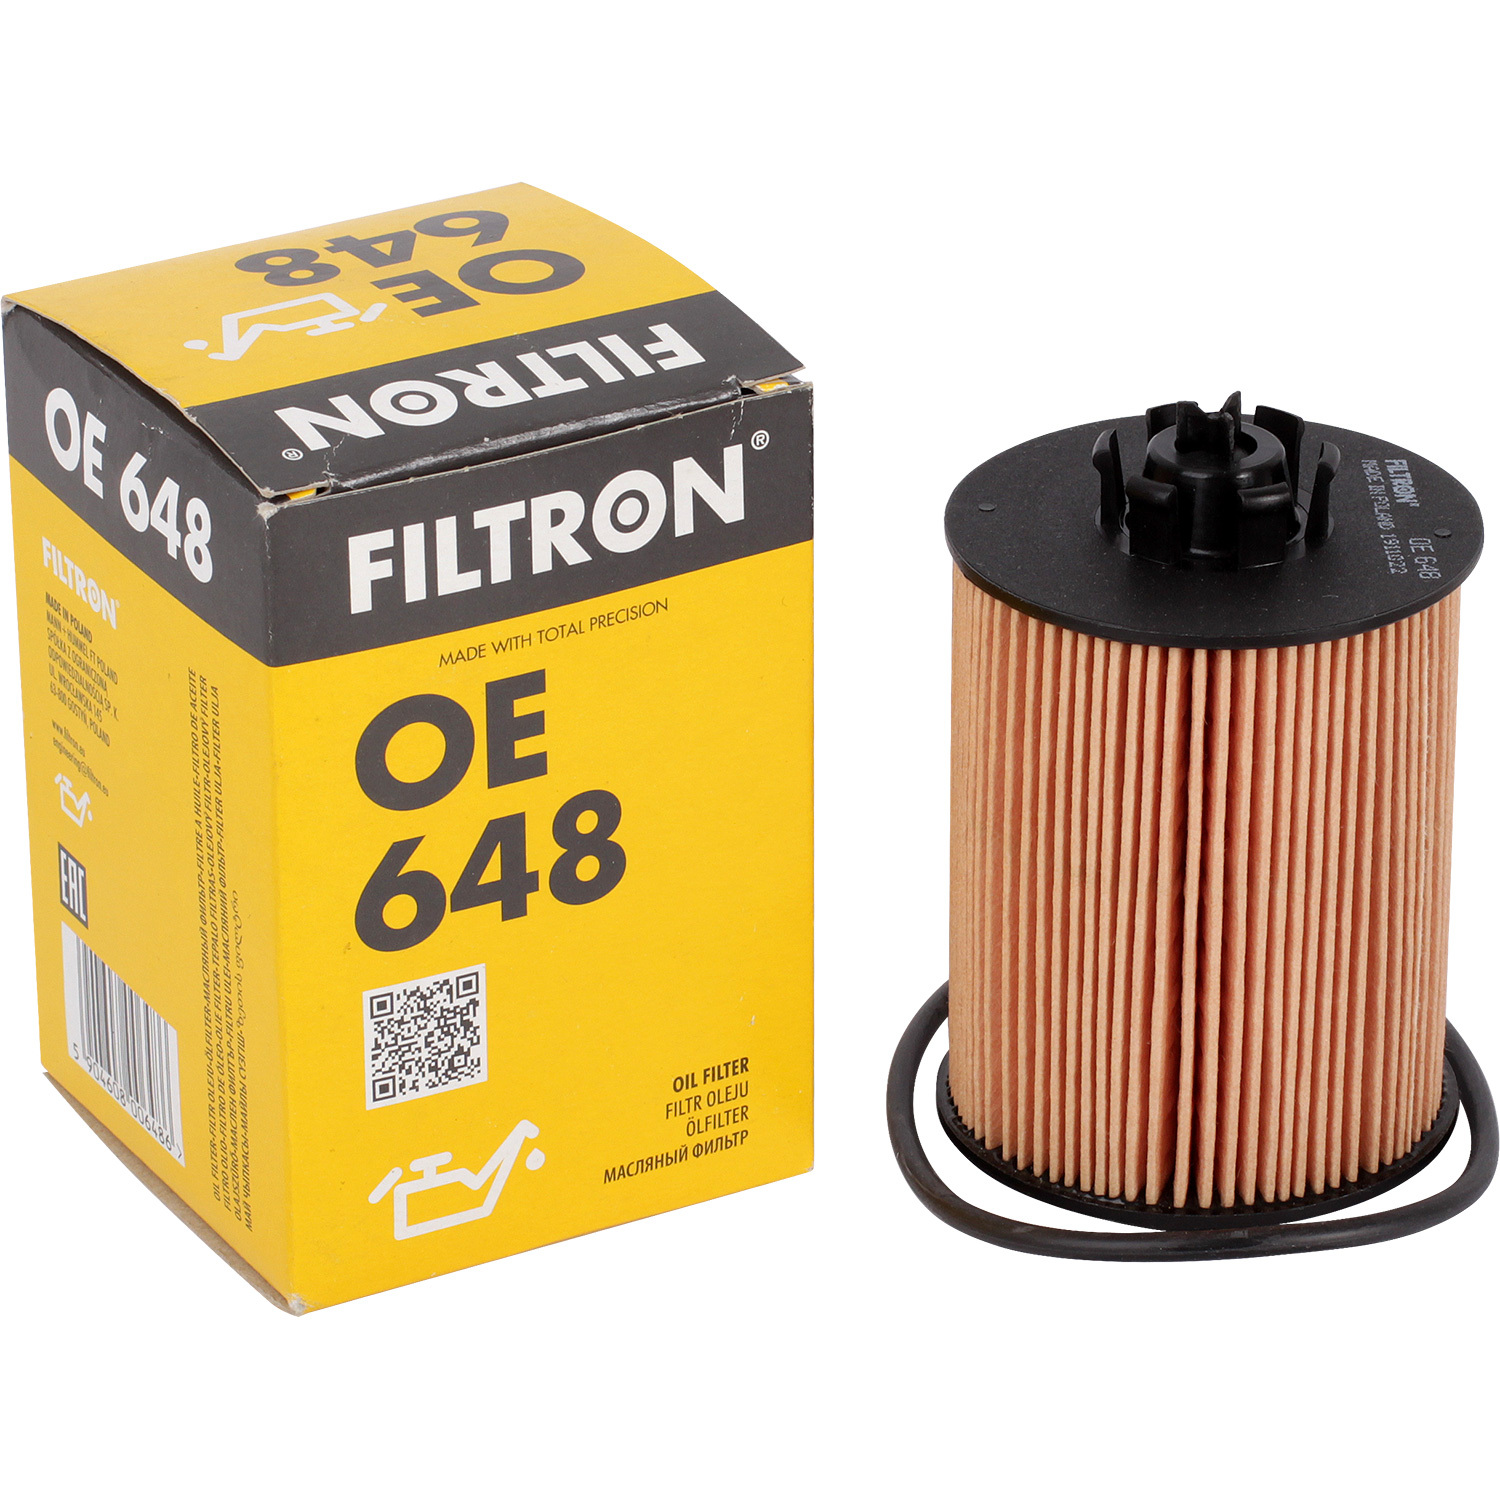 фильтры filtron фильтр масляный filtron oe648 Фильтры Filtron Фильтр масляный Filtron OE648